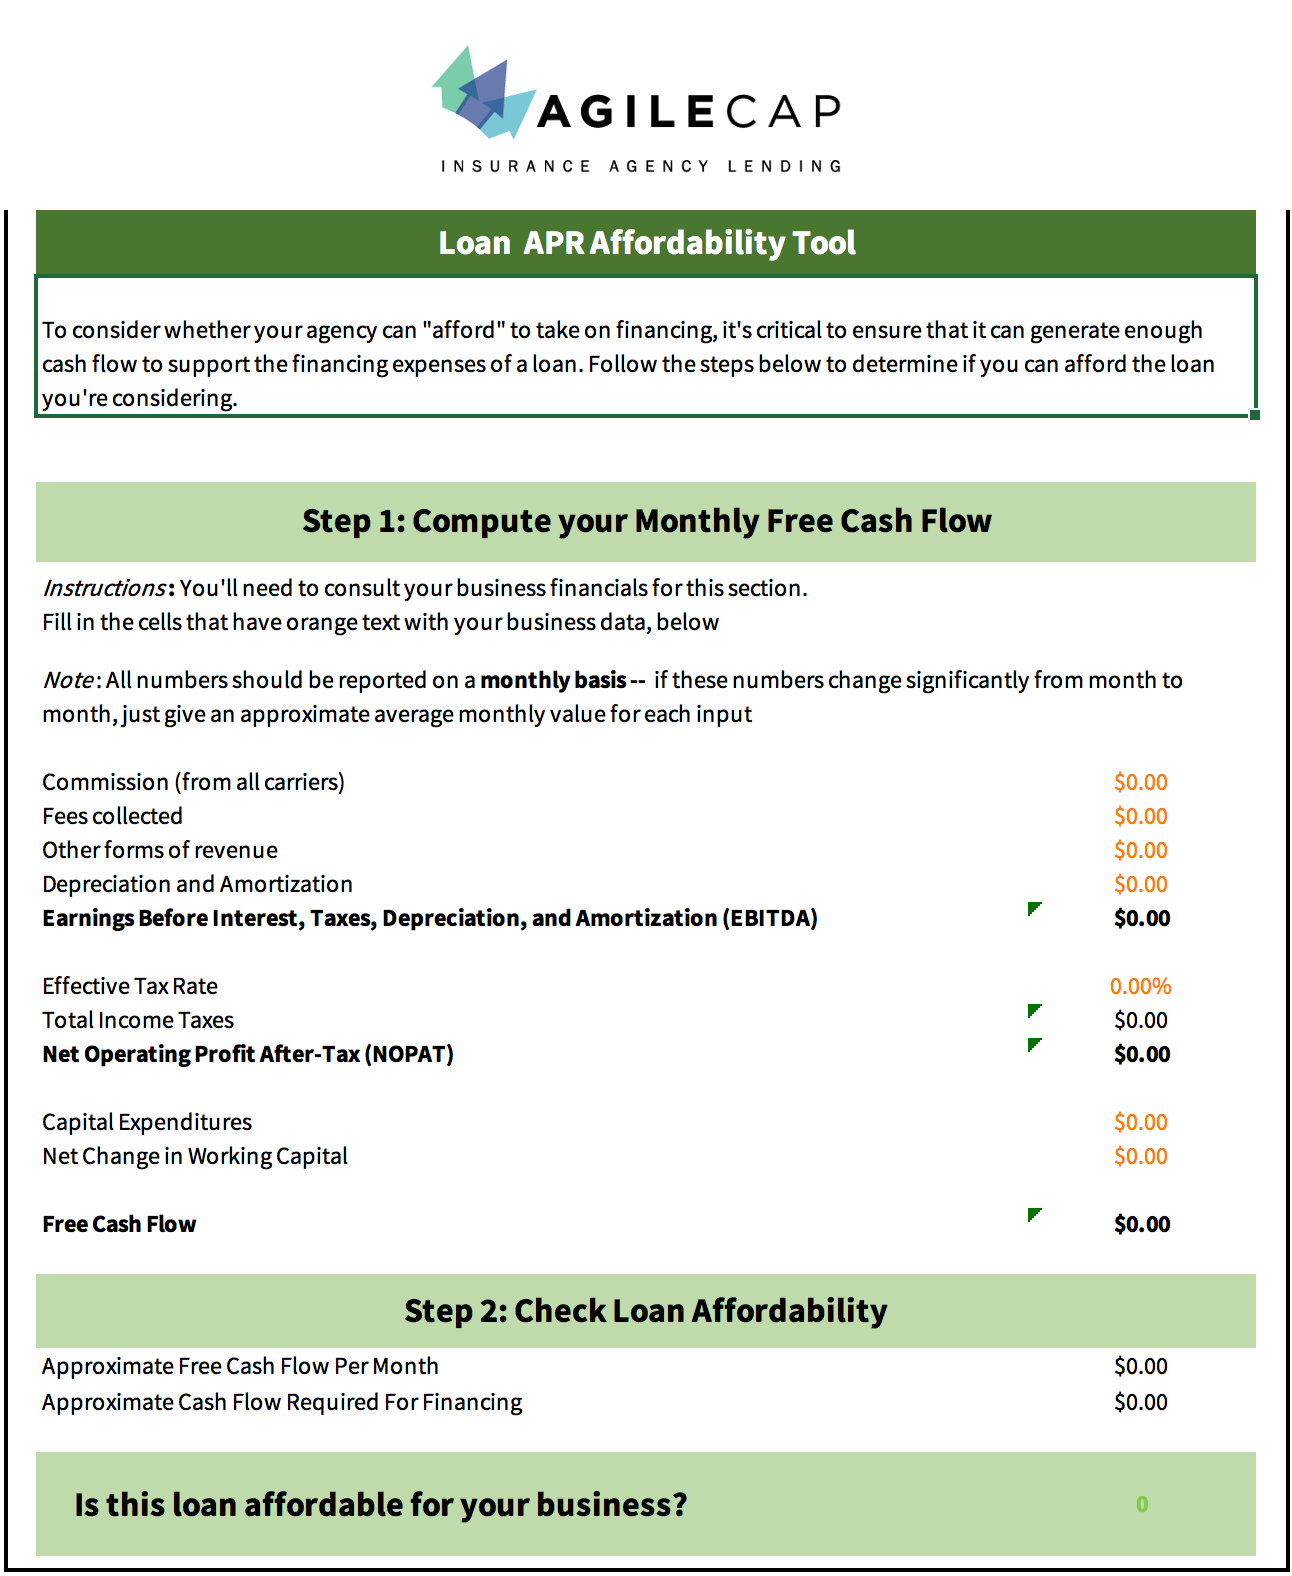 Loan APR affordability tool